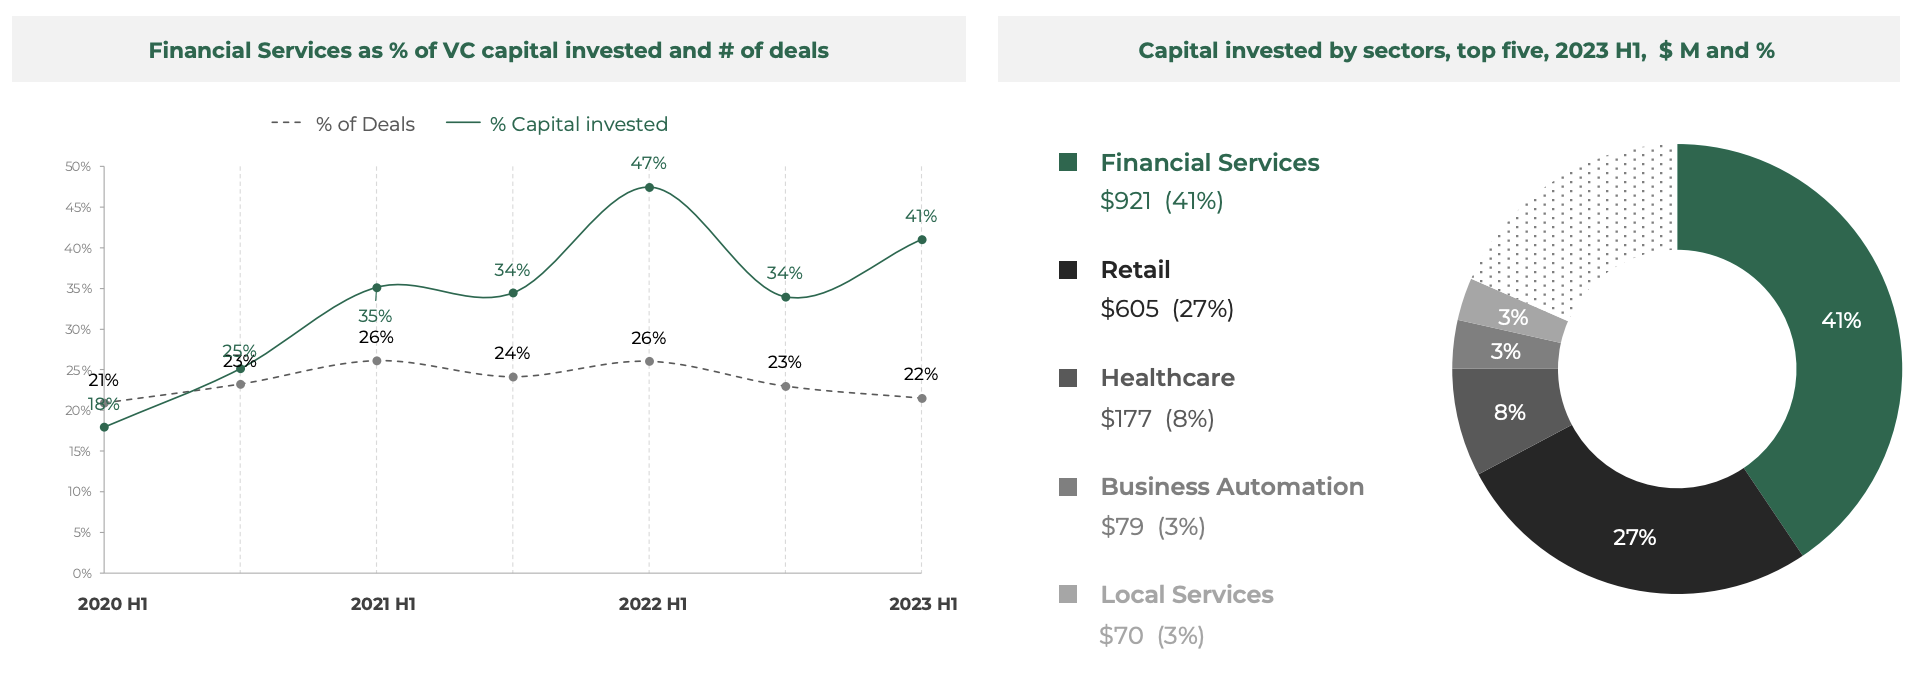 Yatırım yapılan VC sermayesinin yüzdesi ve işlem sayısı olarak finansal hizmetlerin payı, Kaynak: Güneydoğu Asya Teknoloji Yatırımı 2023 İlk Yarı, Cento Ventures, Aralık 1